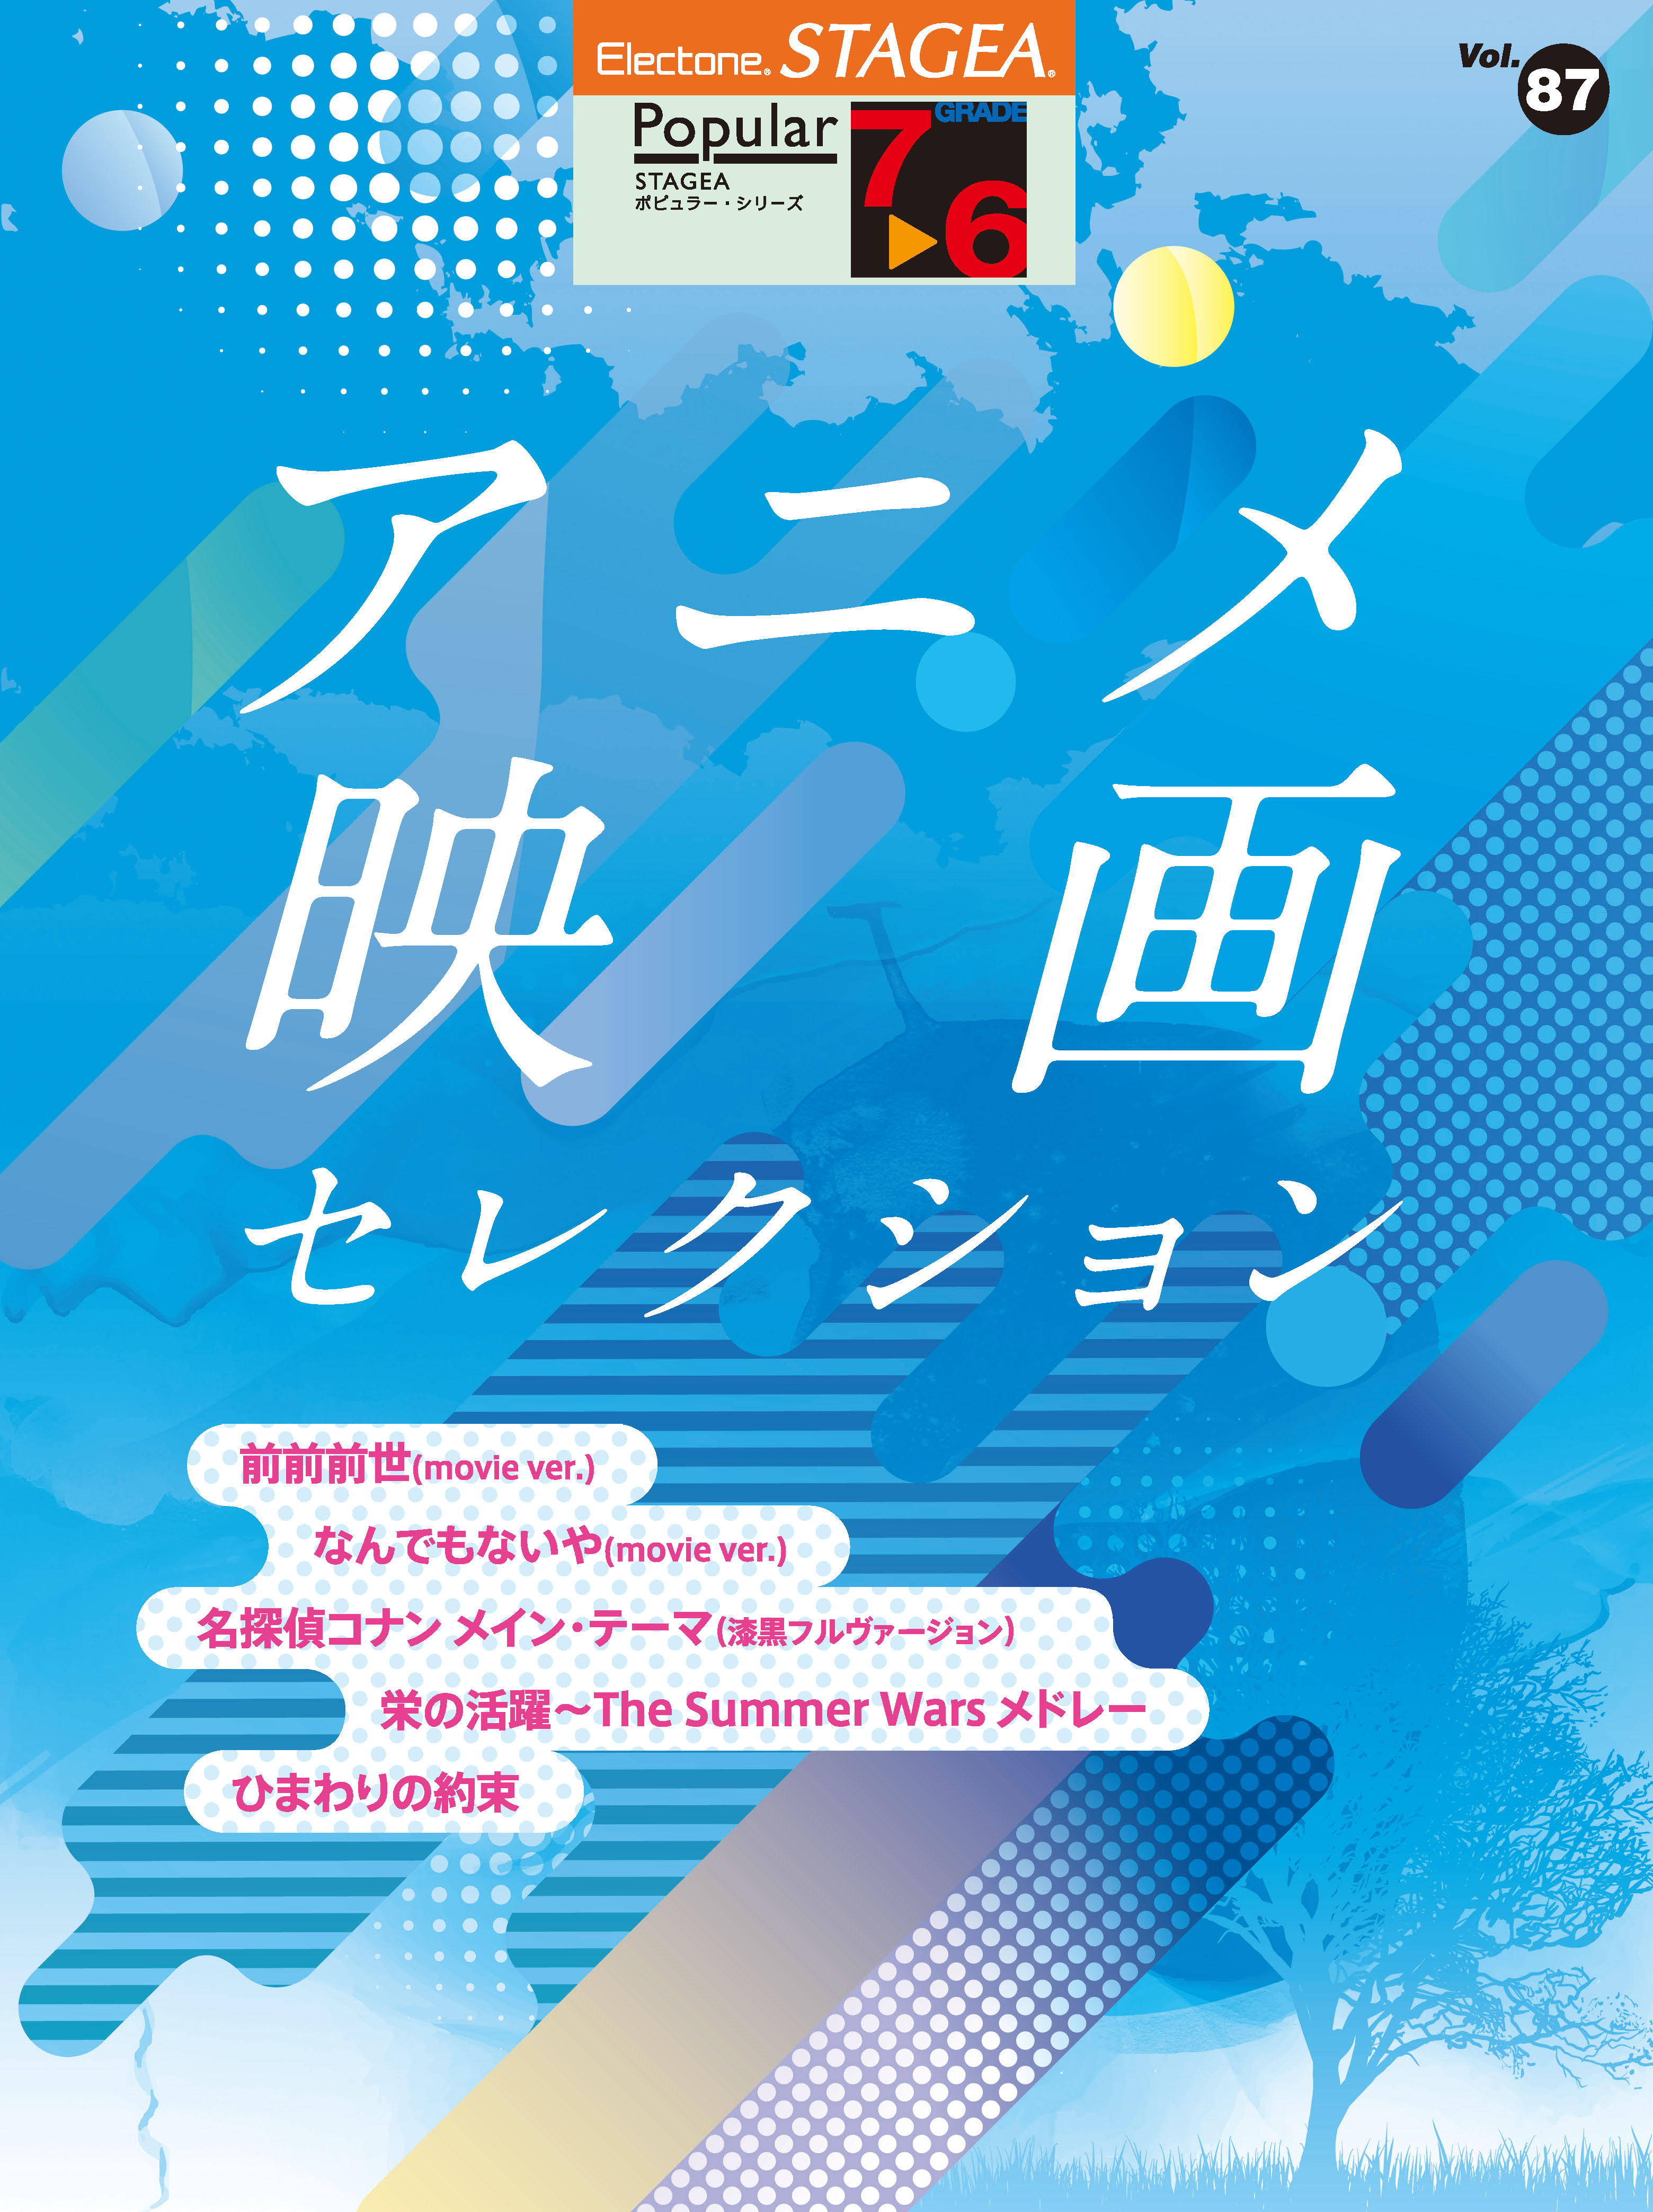 エレクトーン曲集 Stagea ポピュラー 7 6級 Vol 87 アニメ映画 セレクション 7月23日発売 ヤマハミュージックエンタテインメントホールディングスのプレスリリース